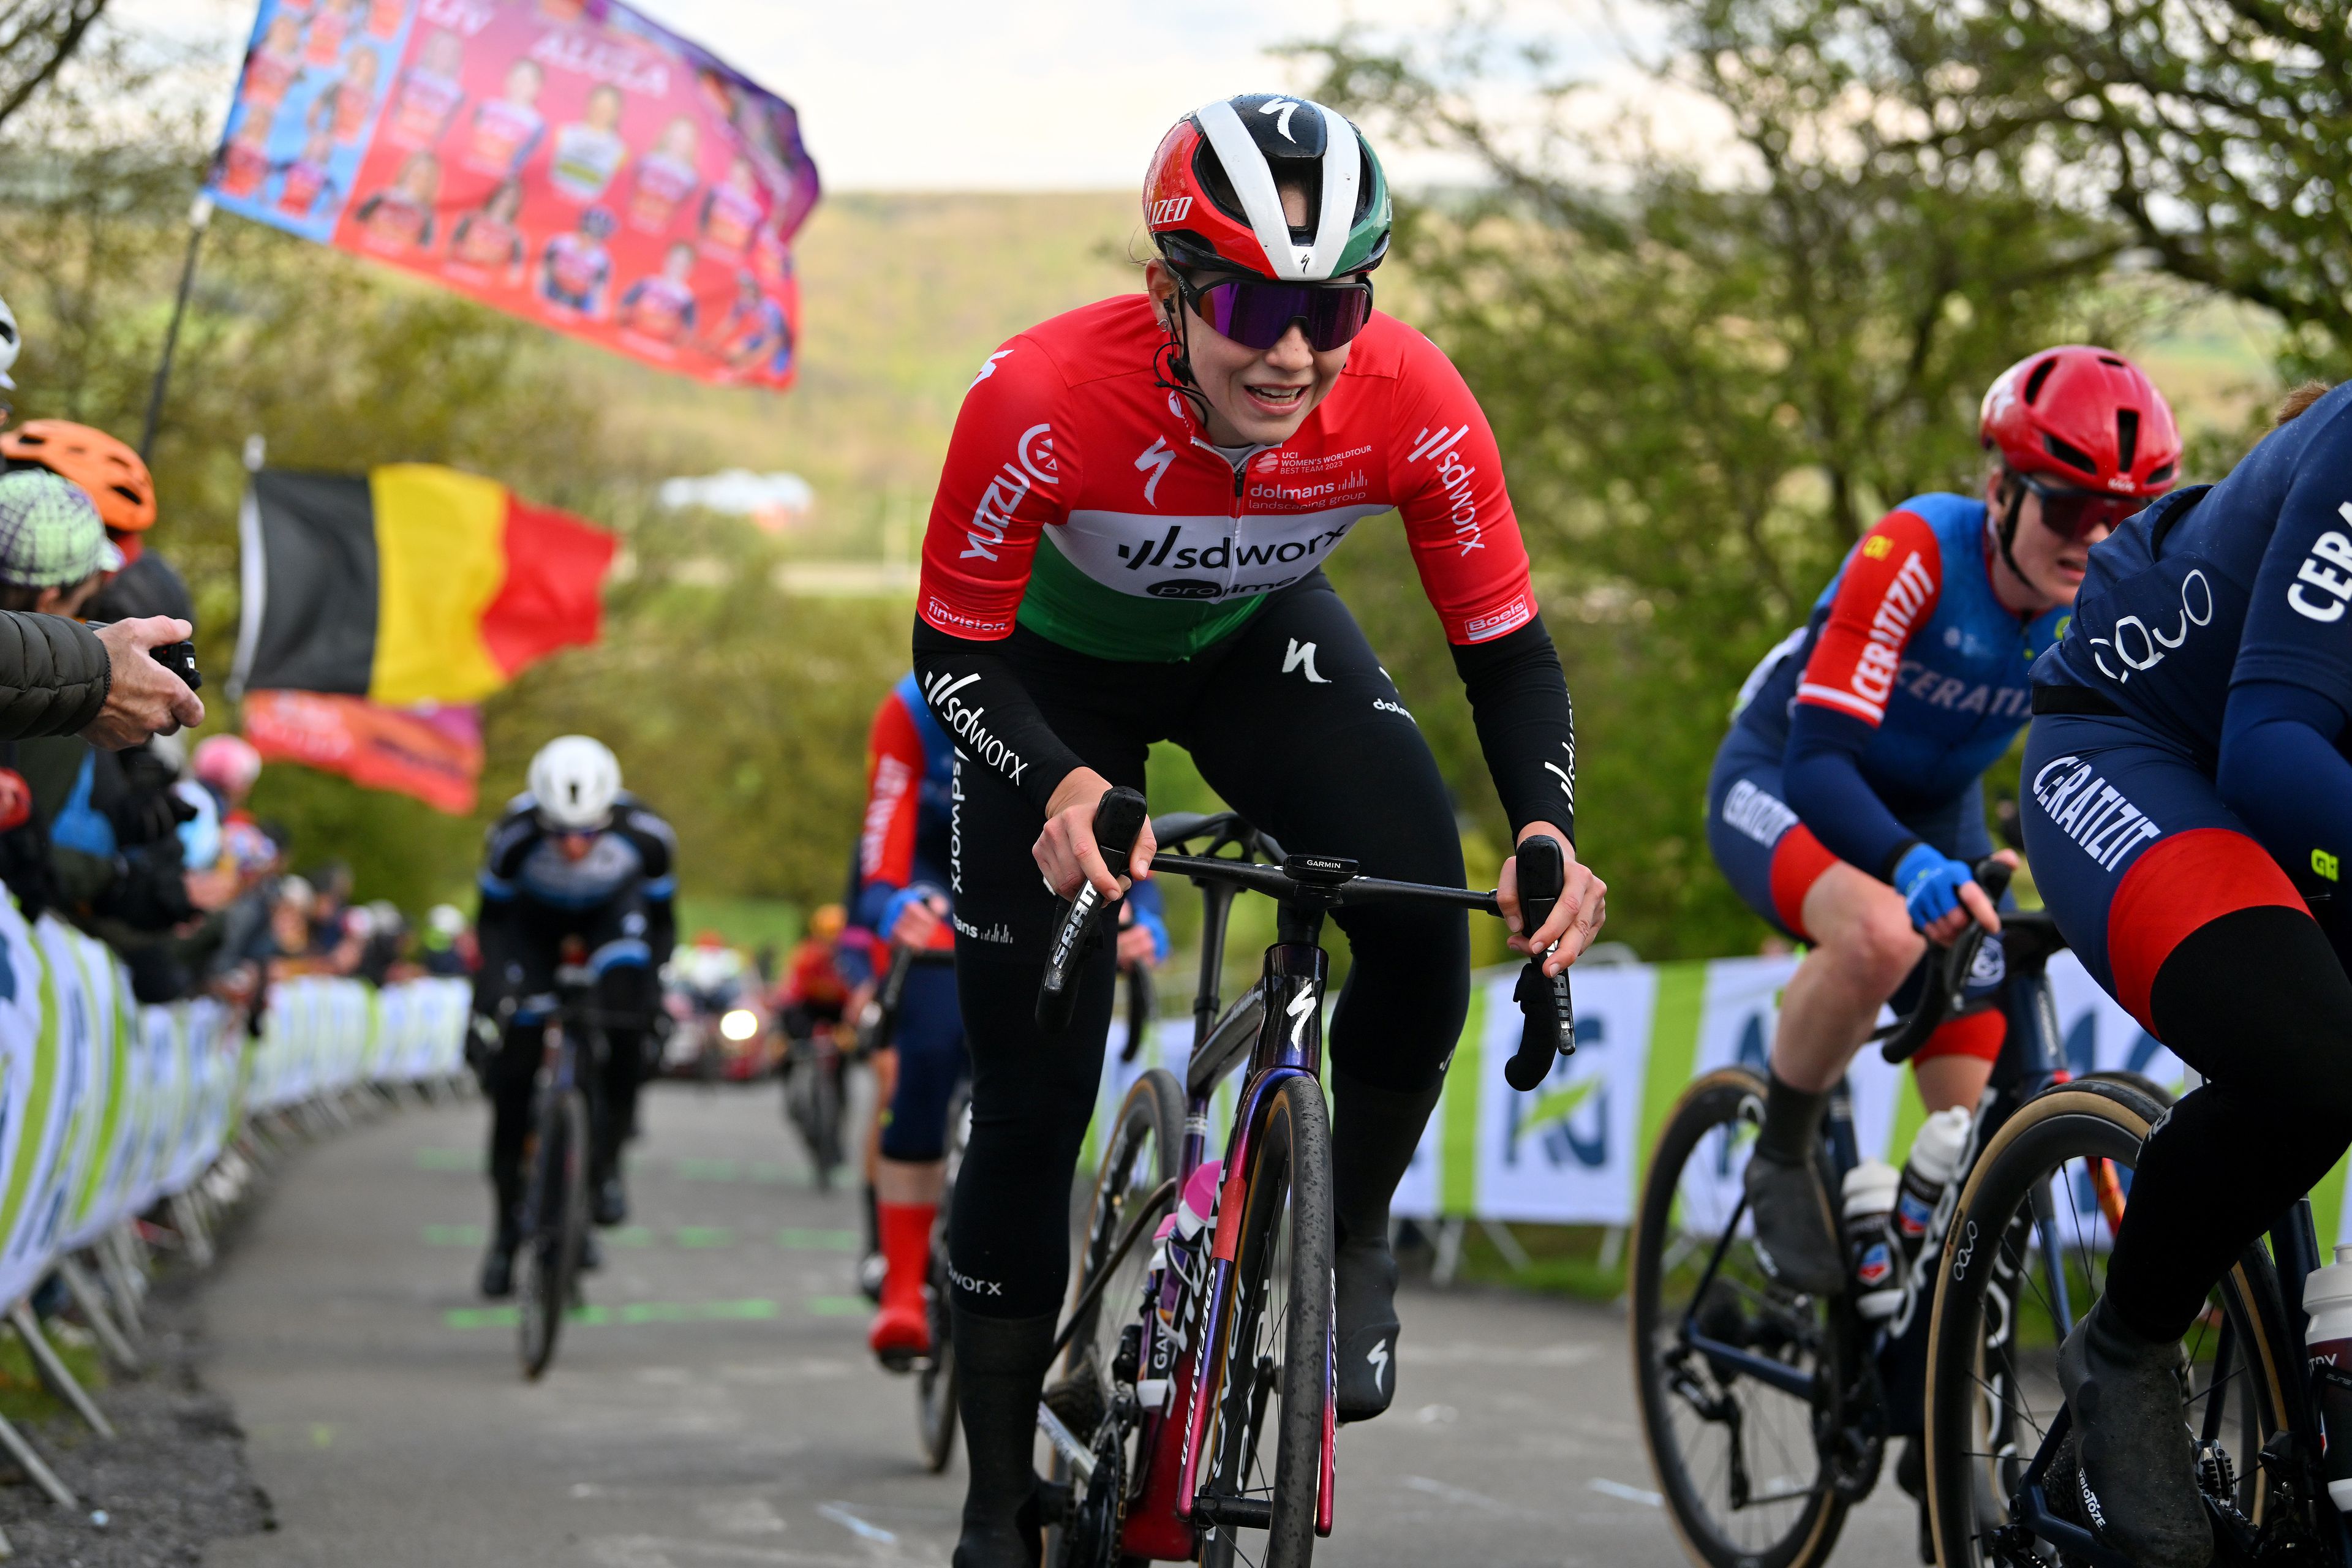 Vas Kata Blanka megkapta az első helyen lévő versenyzőnek járó piros trikót a Vuelta női országúti kerékpáros körversenyen. (Fotó: Getty Images)